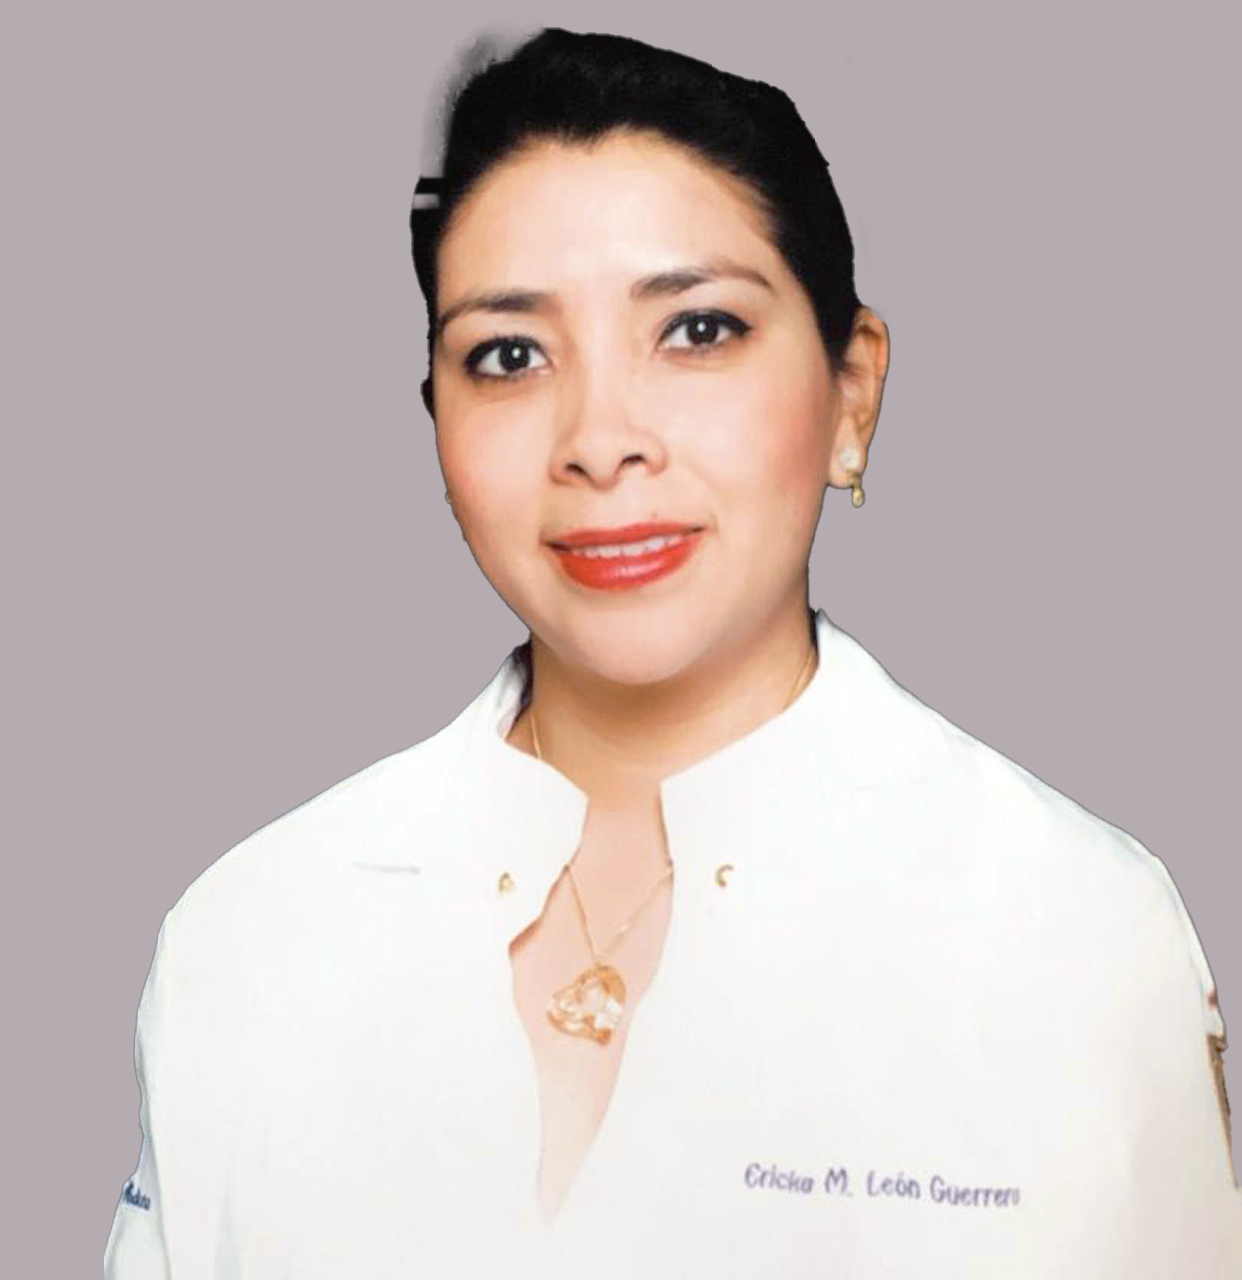 Dra. Ericka M. León Guerrero